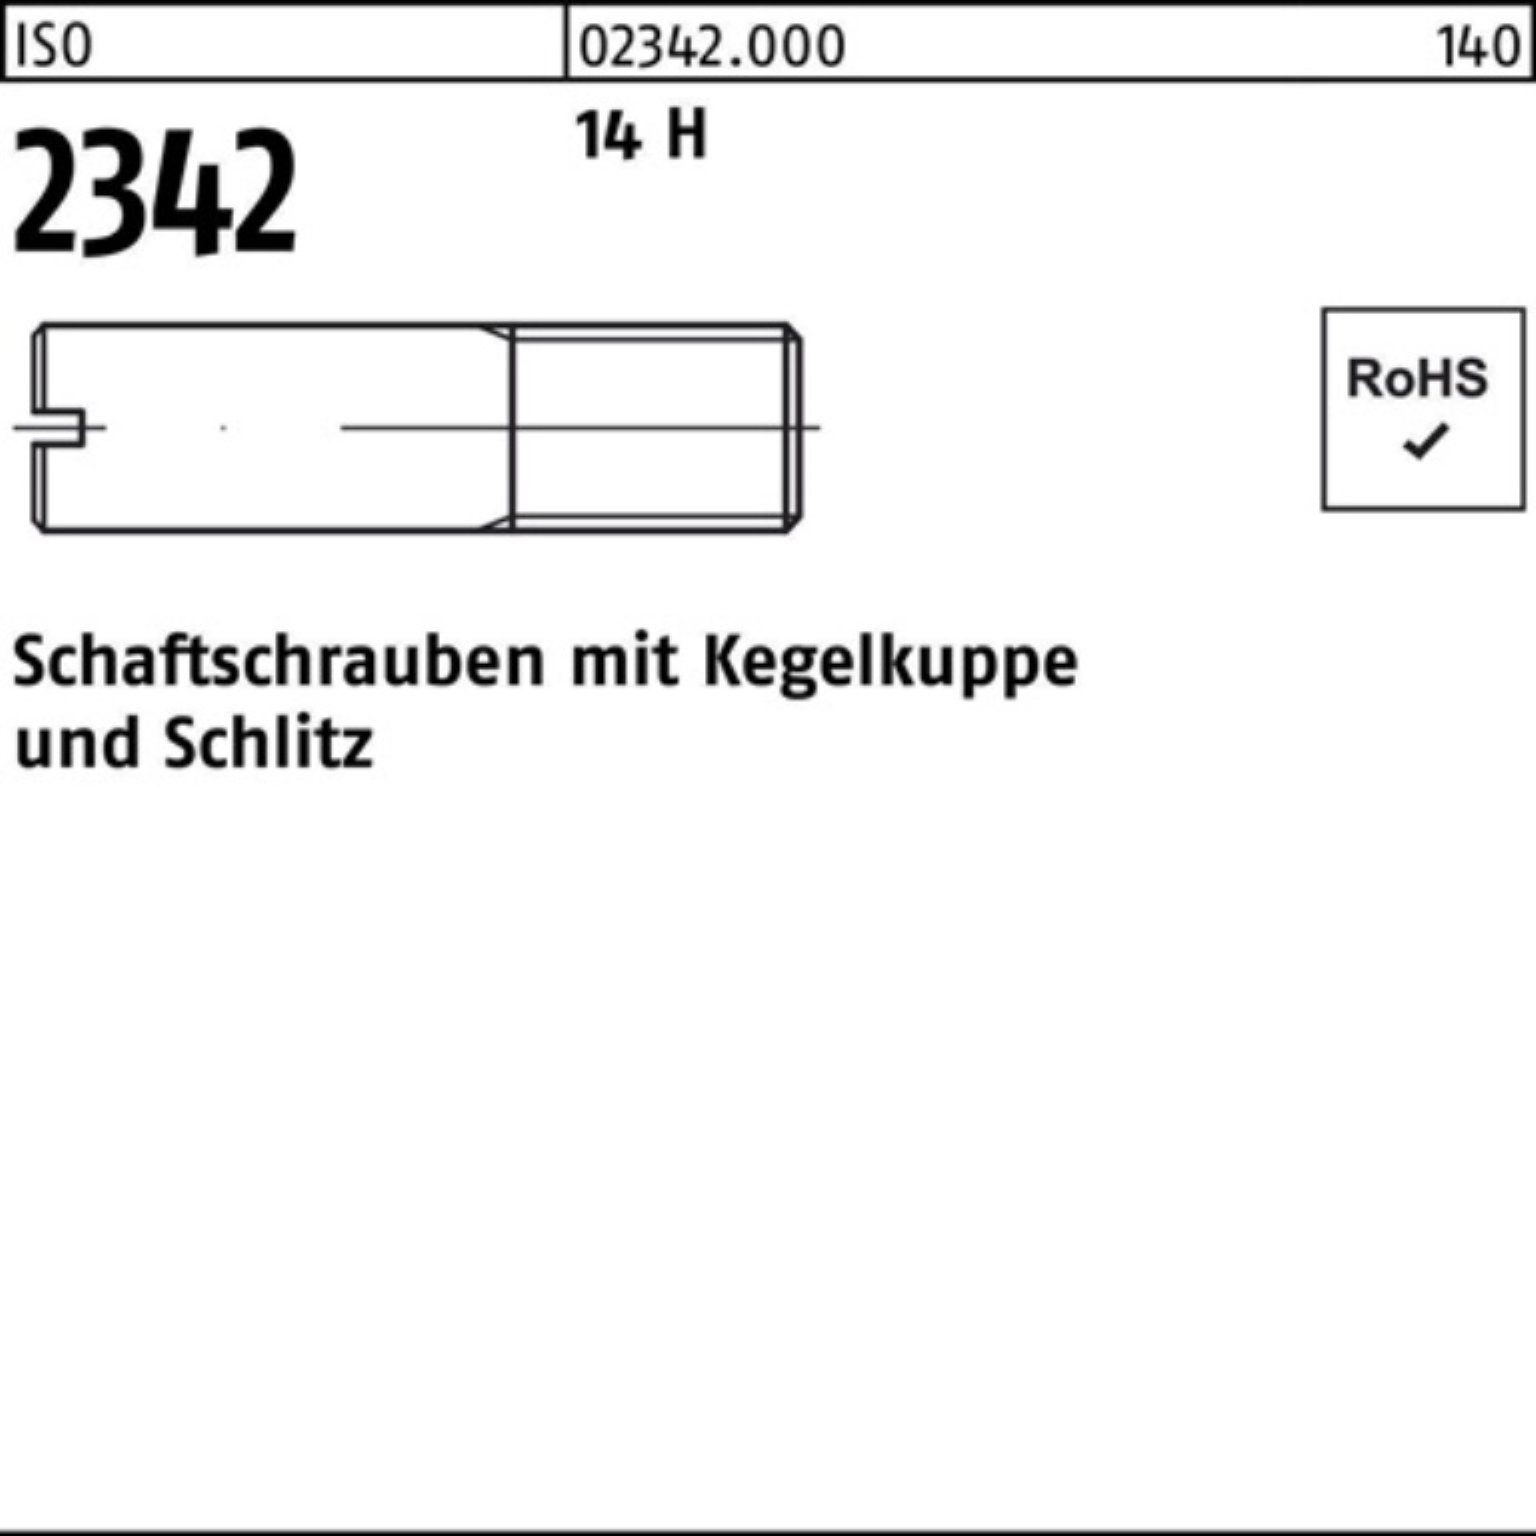 Reyher Schraube 100er Pack Schaftschraube ISO 2342 Kegelkuppe/Schlitz M12x 25 14 H 50